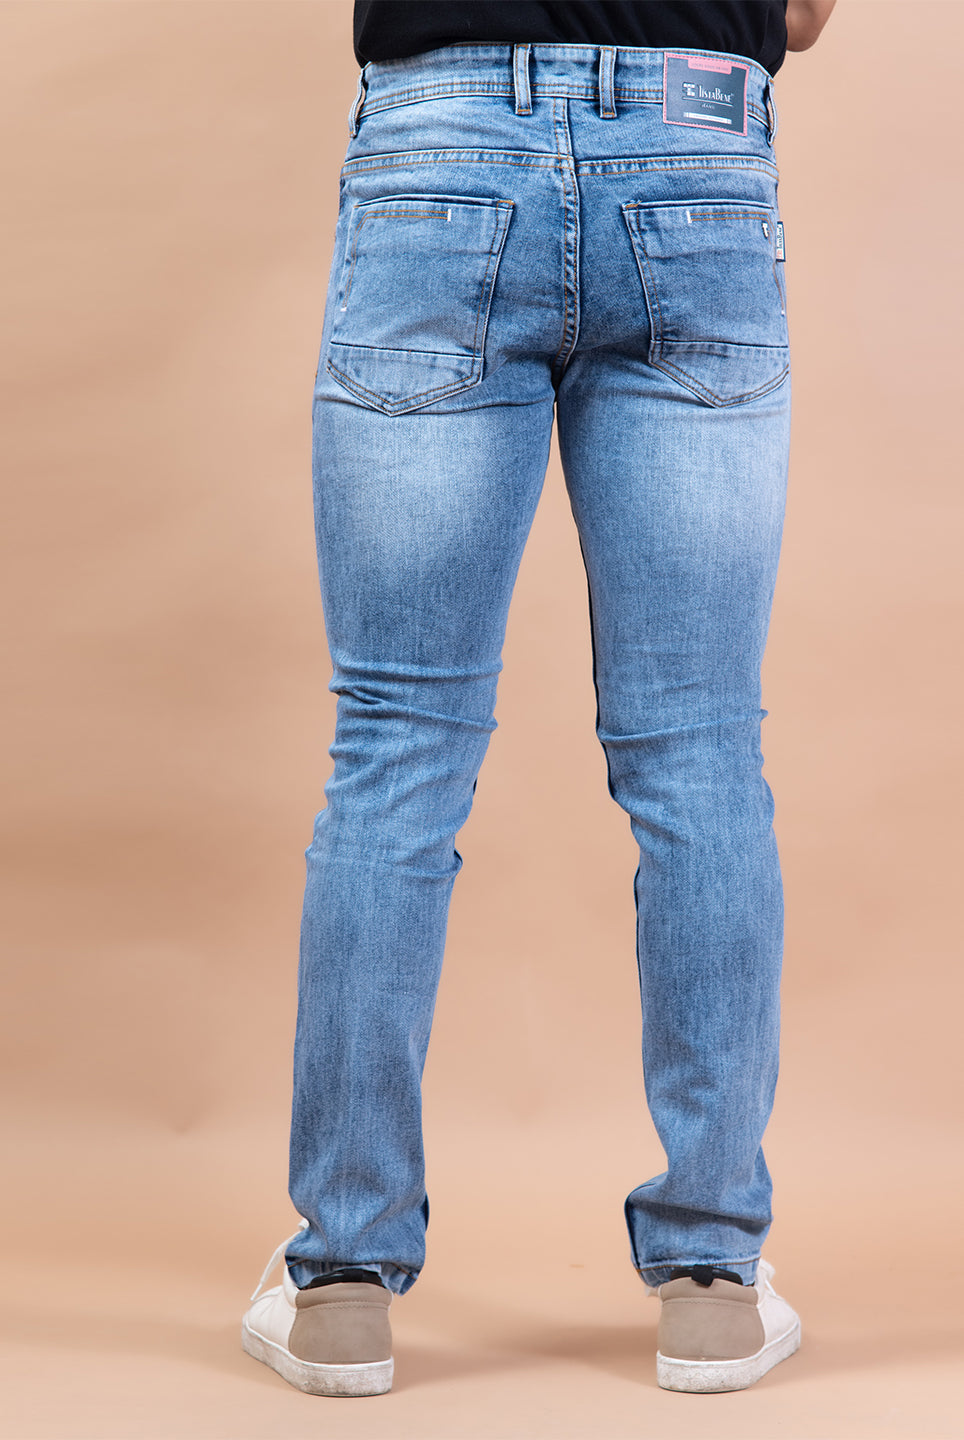  original denim jeans